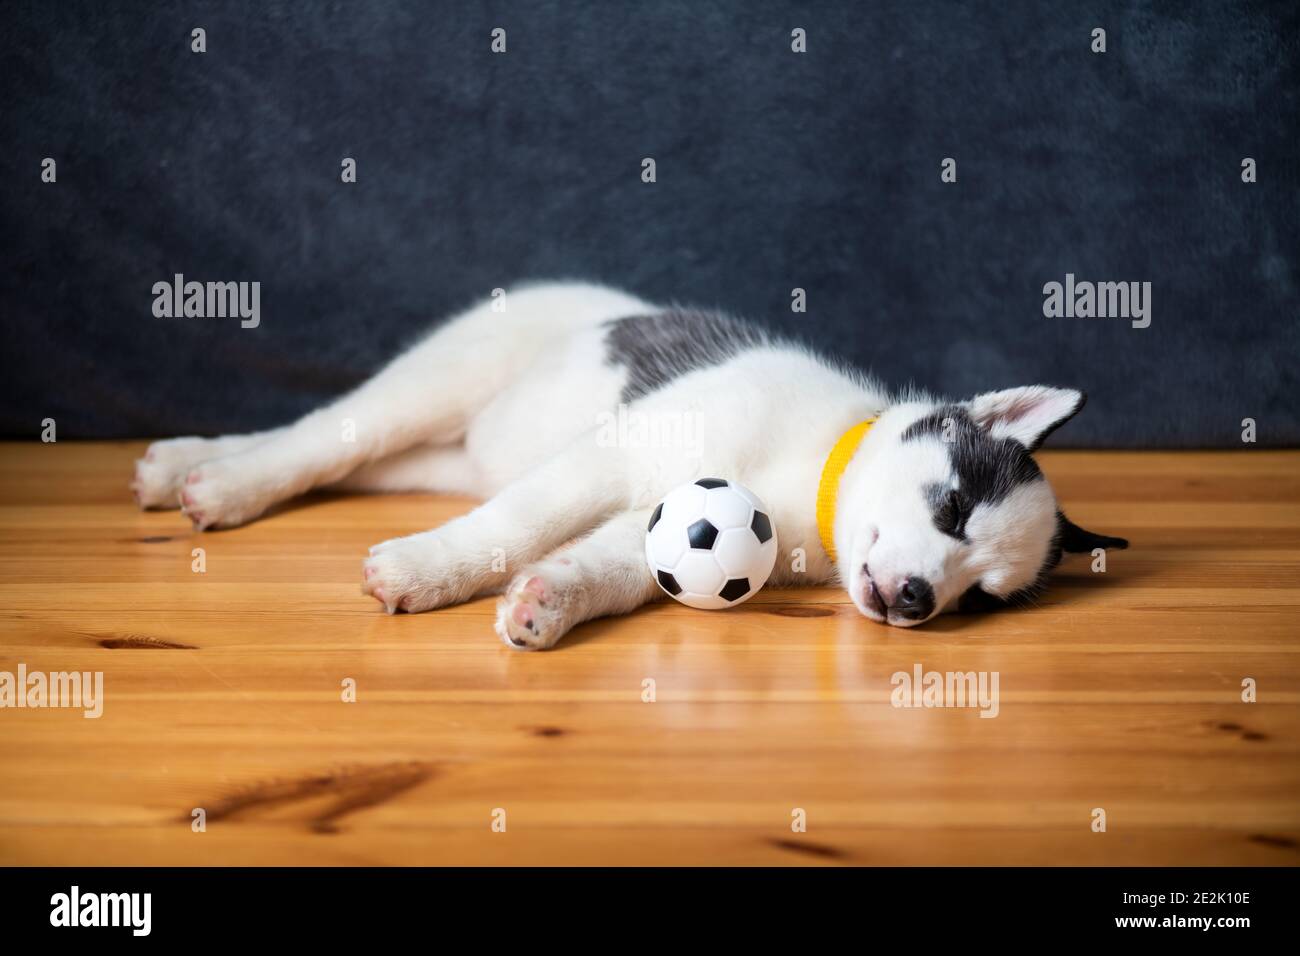 Ein kleiner weißer Hund Welpe Rasse sibirischen Husky mit schönen blauen Augen liegt auf Holzboden mit Kugelspielzeug. Hunde und Haustiere Fotografie Stockfoto